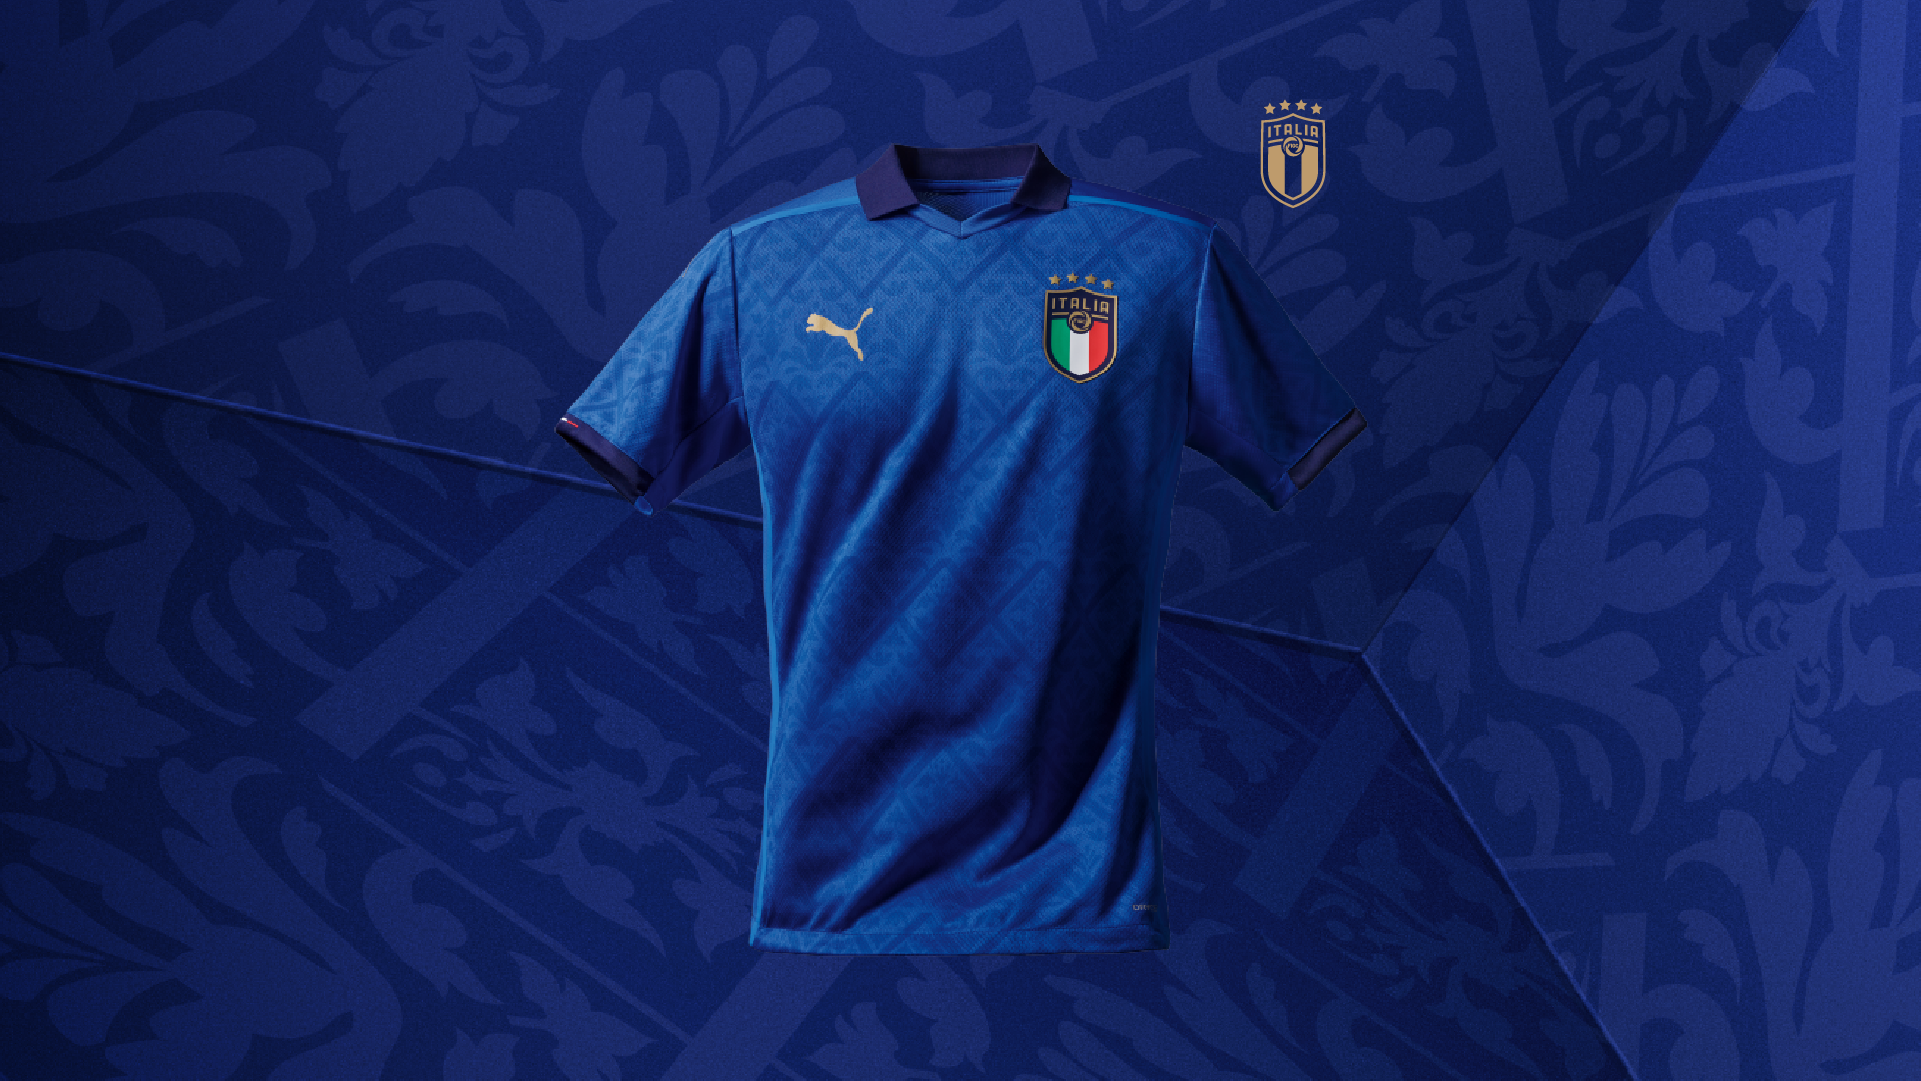 Por qué la camiseta de Italia es azul? - Tu Profe de Italiano